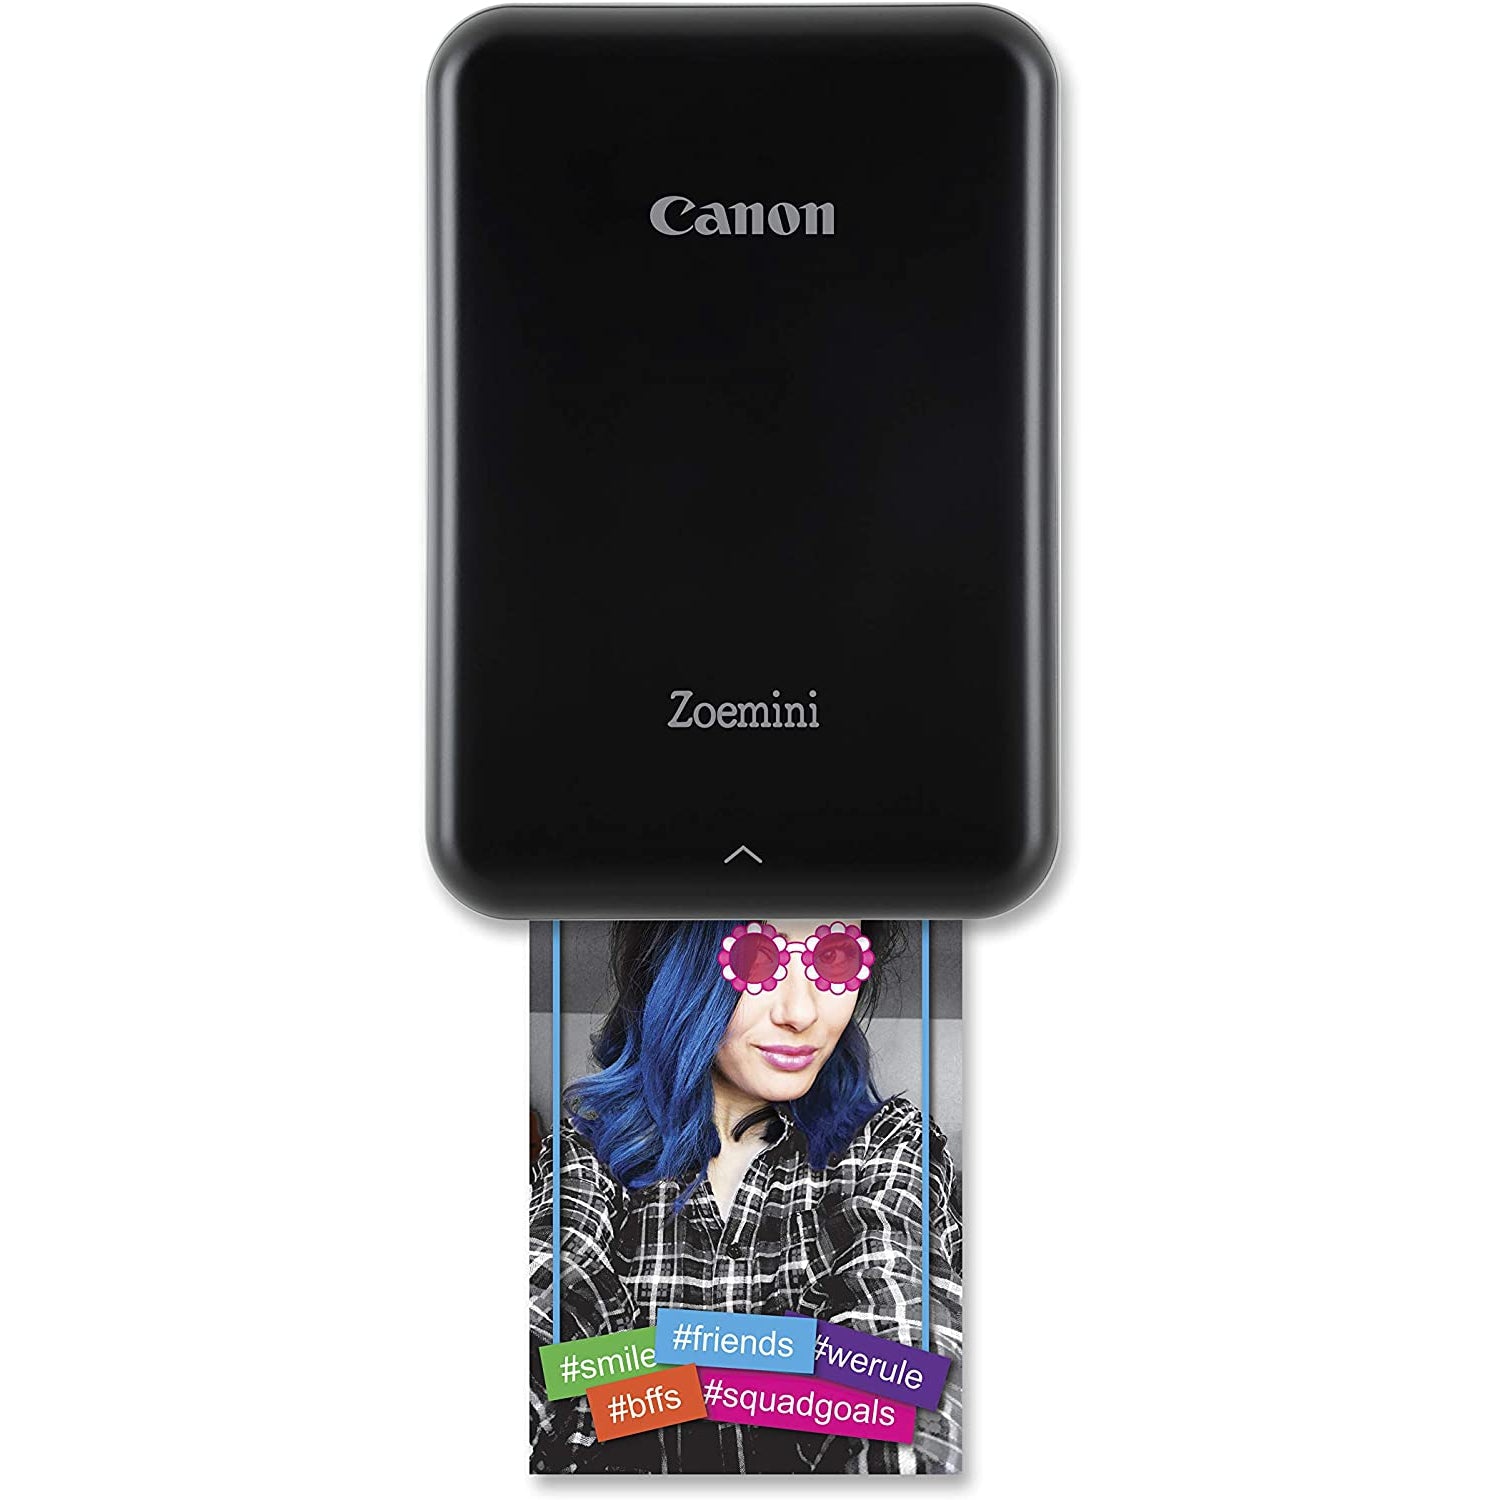 Canon Zoemini 2 Mobile Photo Printer, £119.99